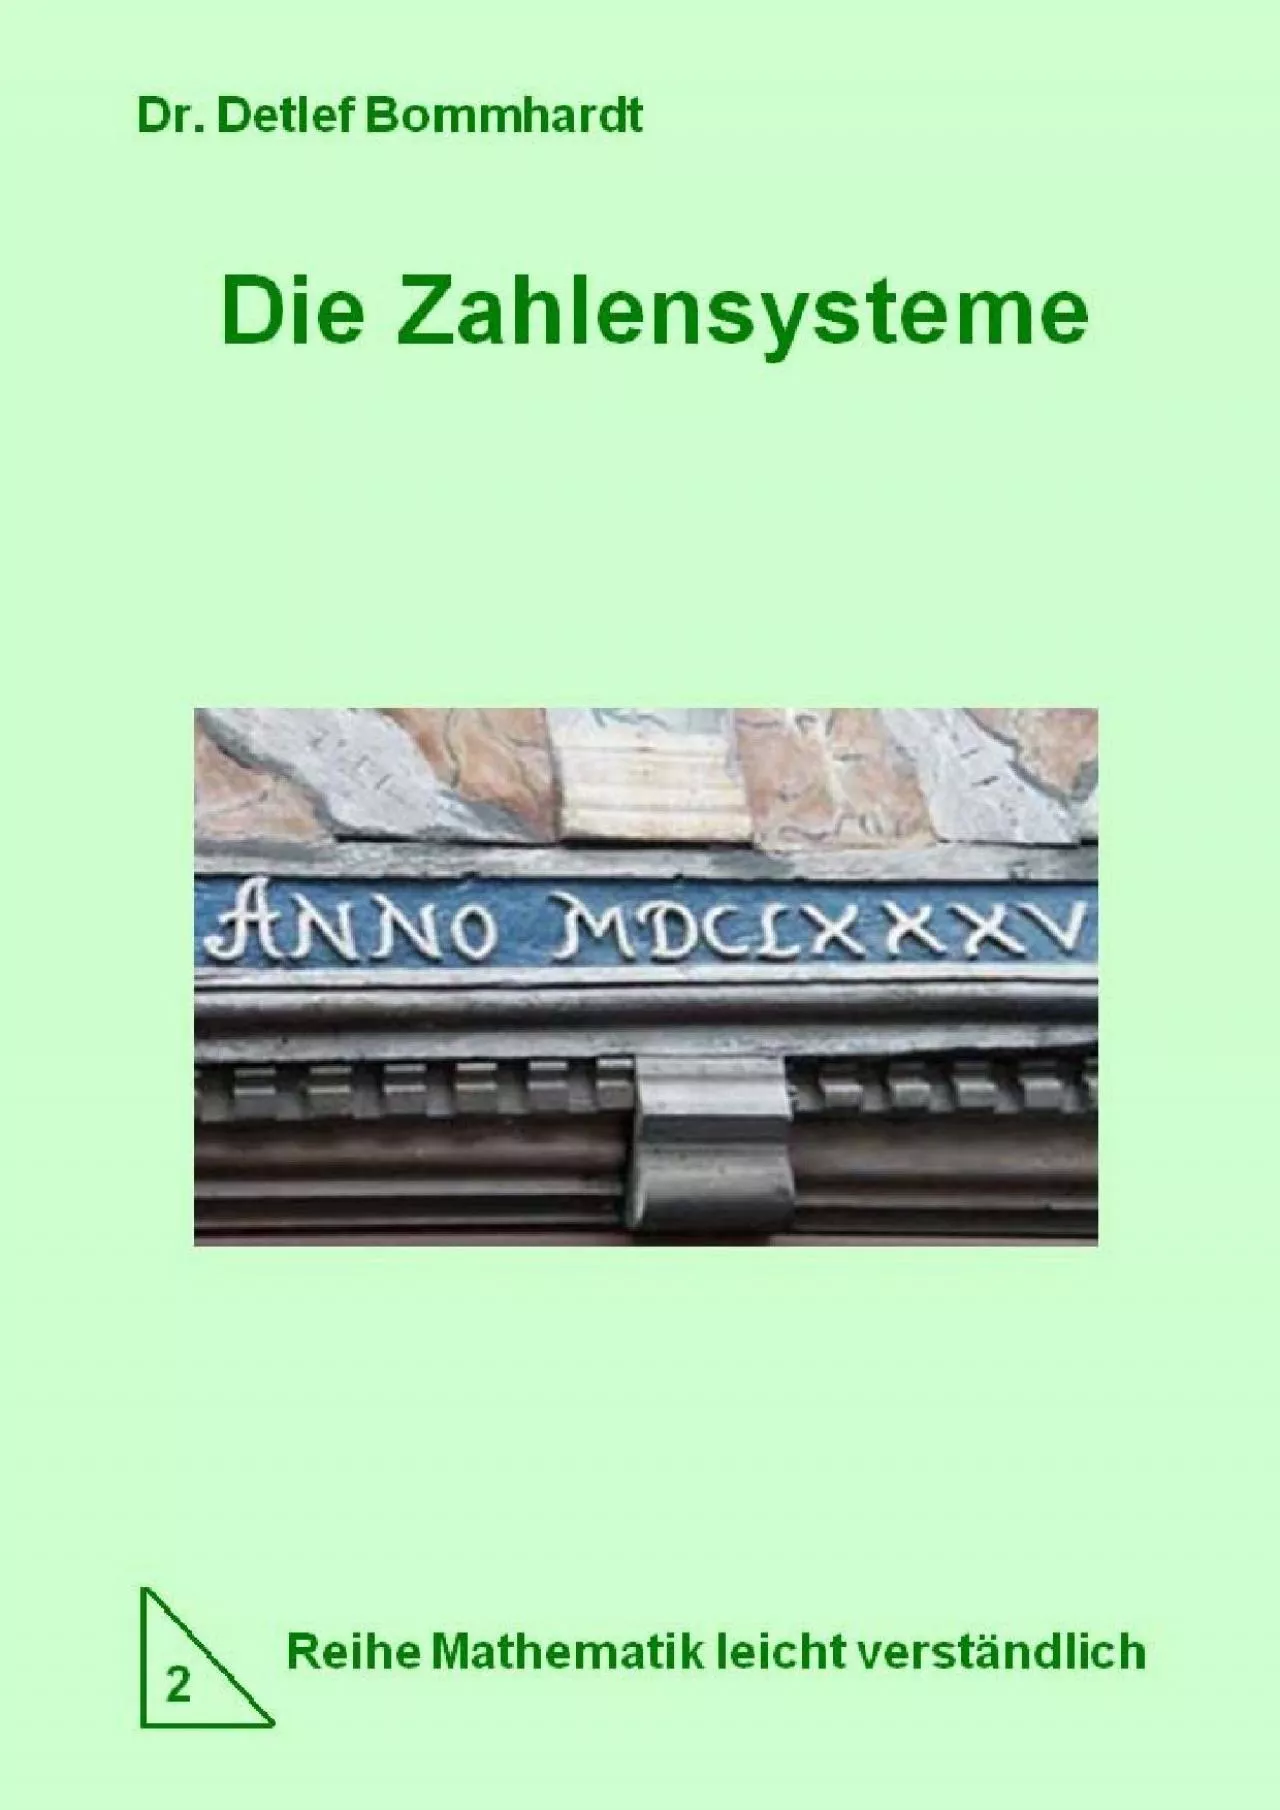 [READ] Die Zahlensysteme - leicht verständlich Mathematik leicht gemacht 2 German Edition